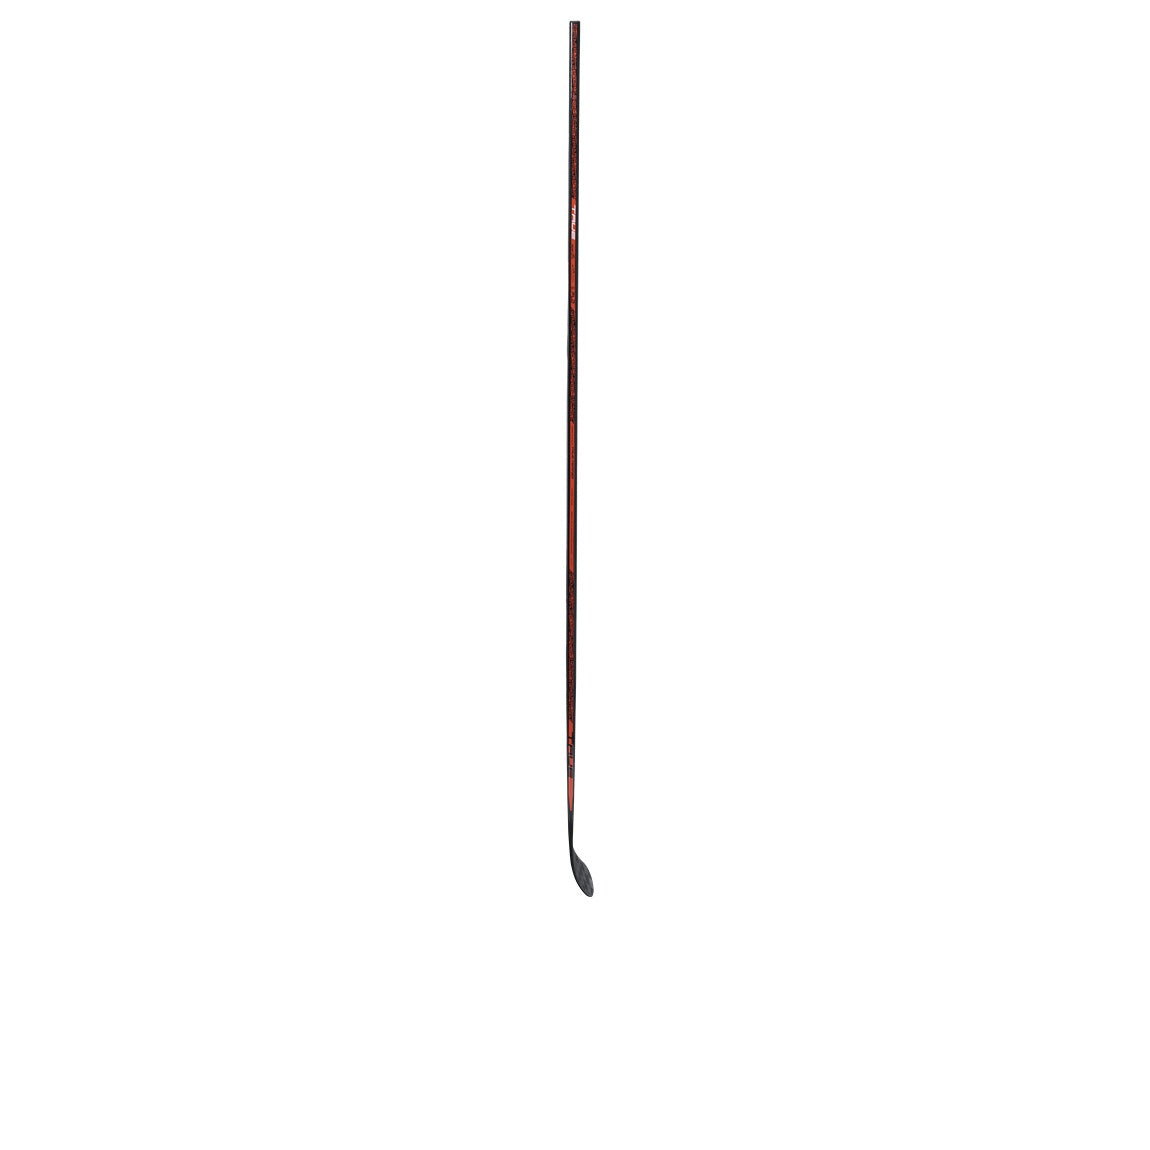 True HZRDUS 3X4 Hockey Stick - Junior